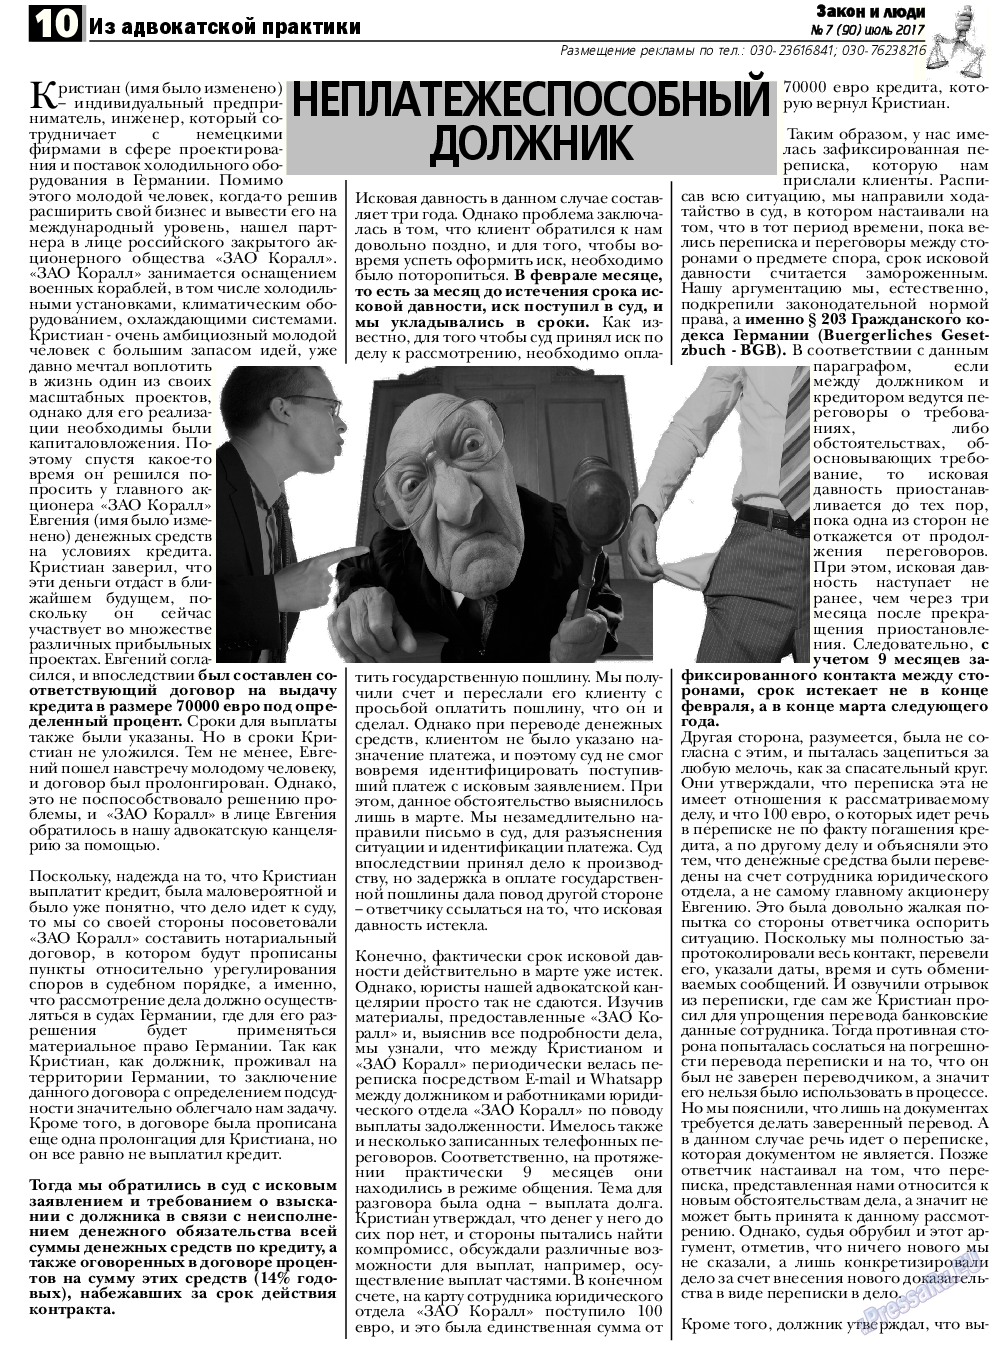 Закон и люди, газета. 2017 №7 стр.10